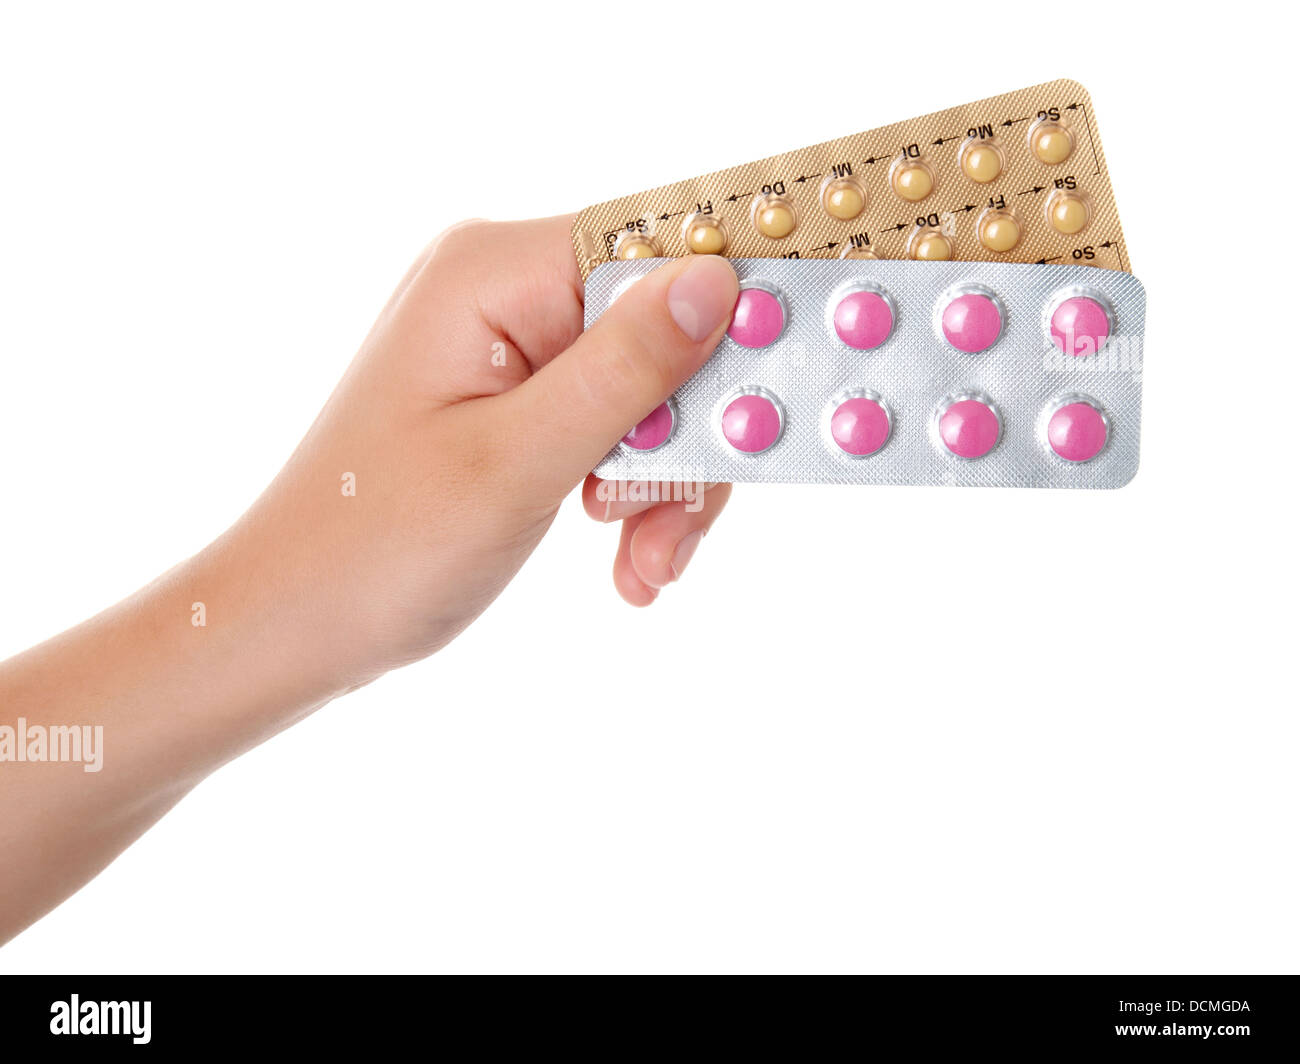 Tabletten (Antibabypille) in der Hand, isoliert auf weißem Hintergrund Stockfoto